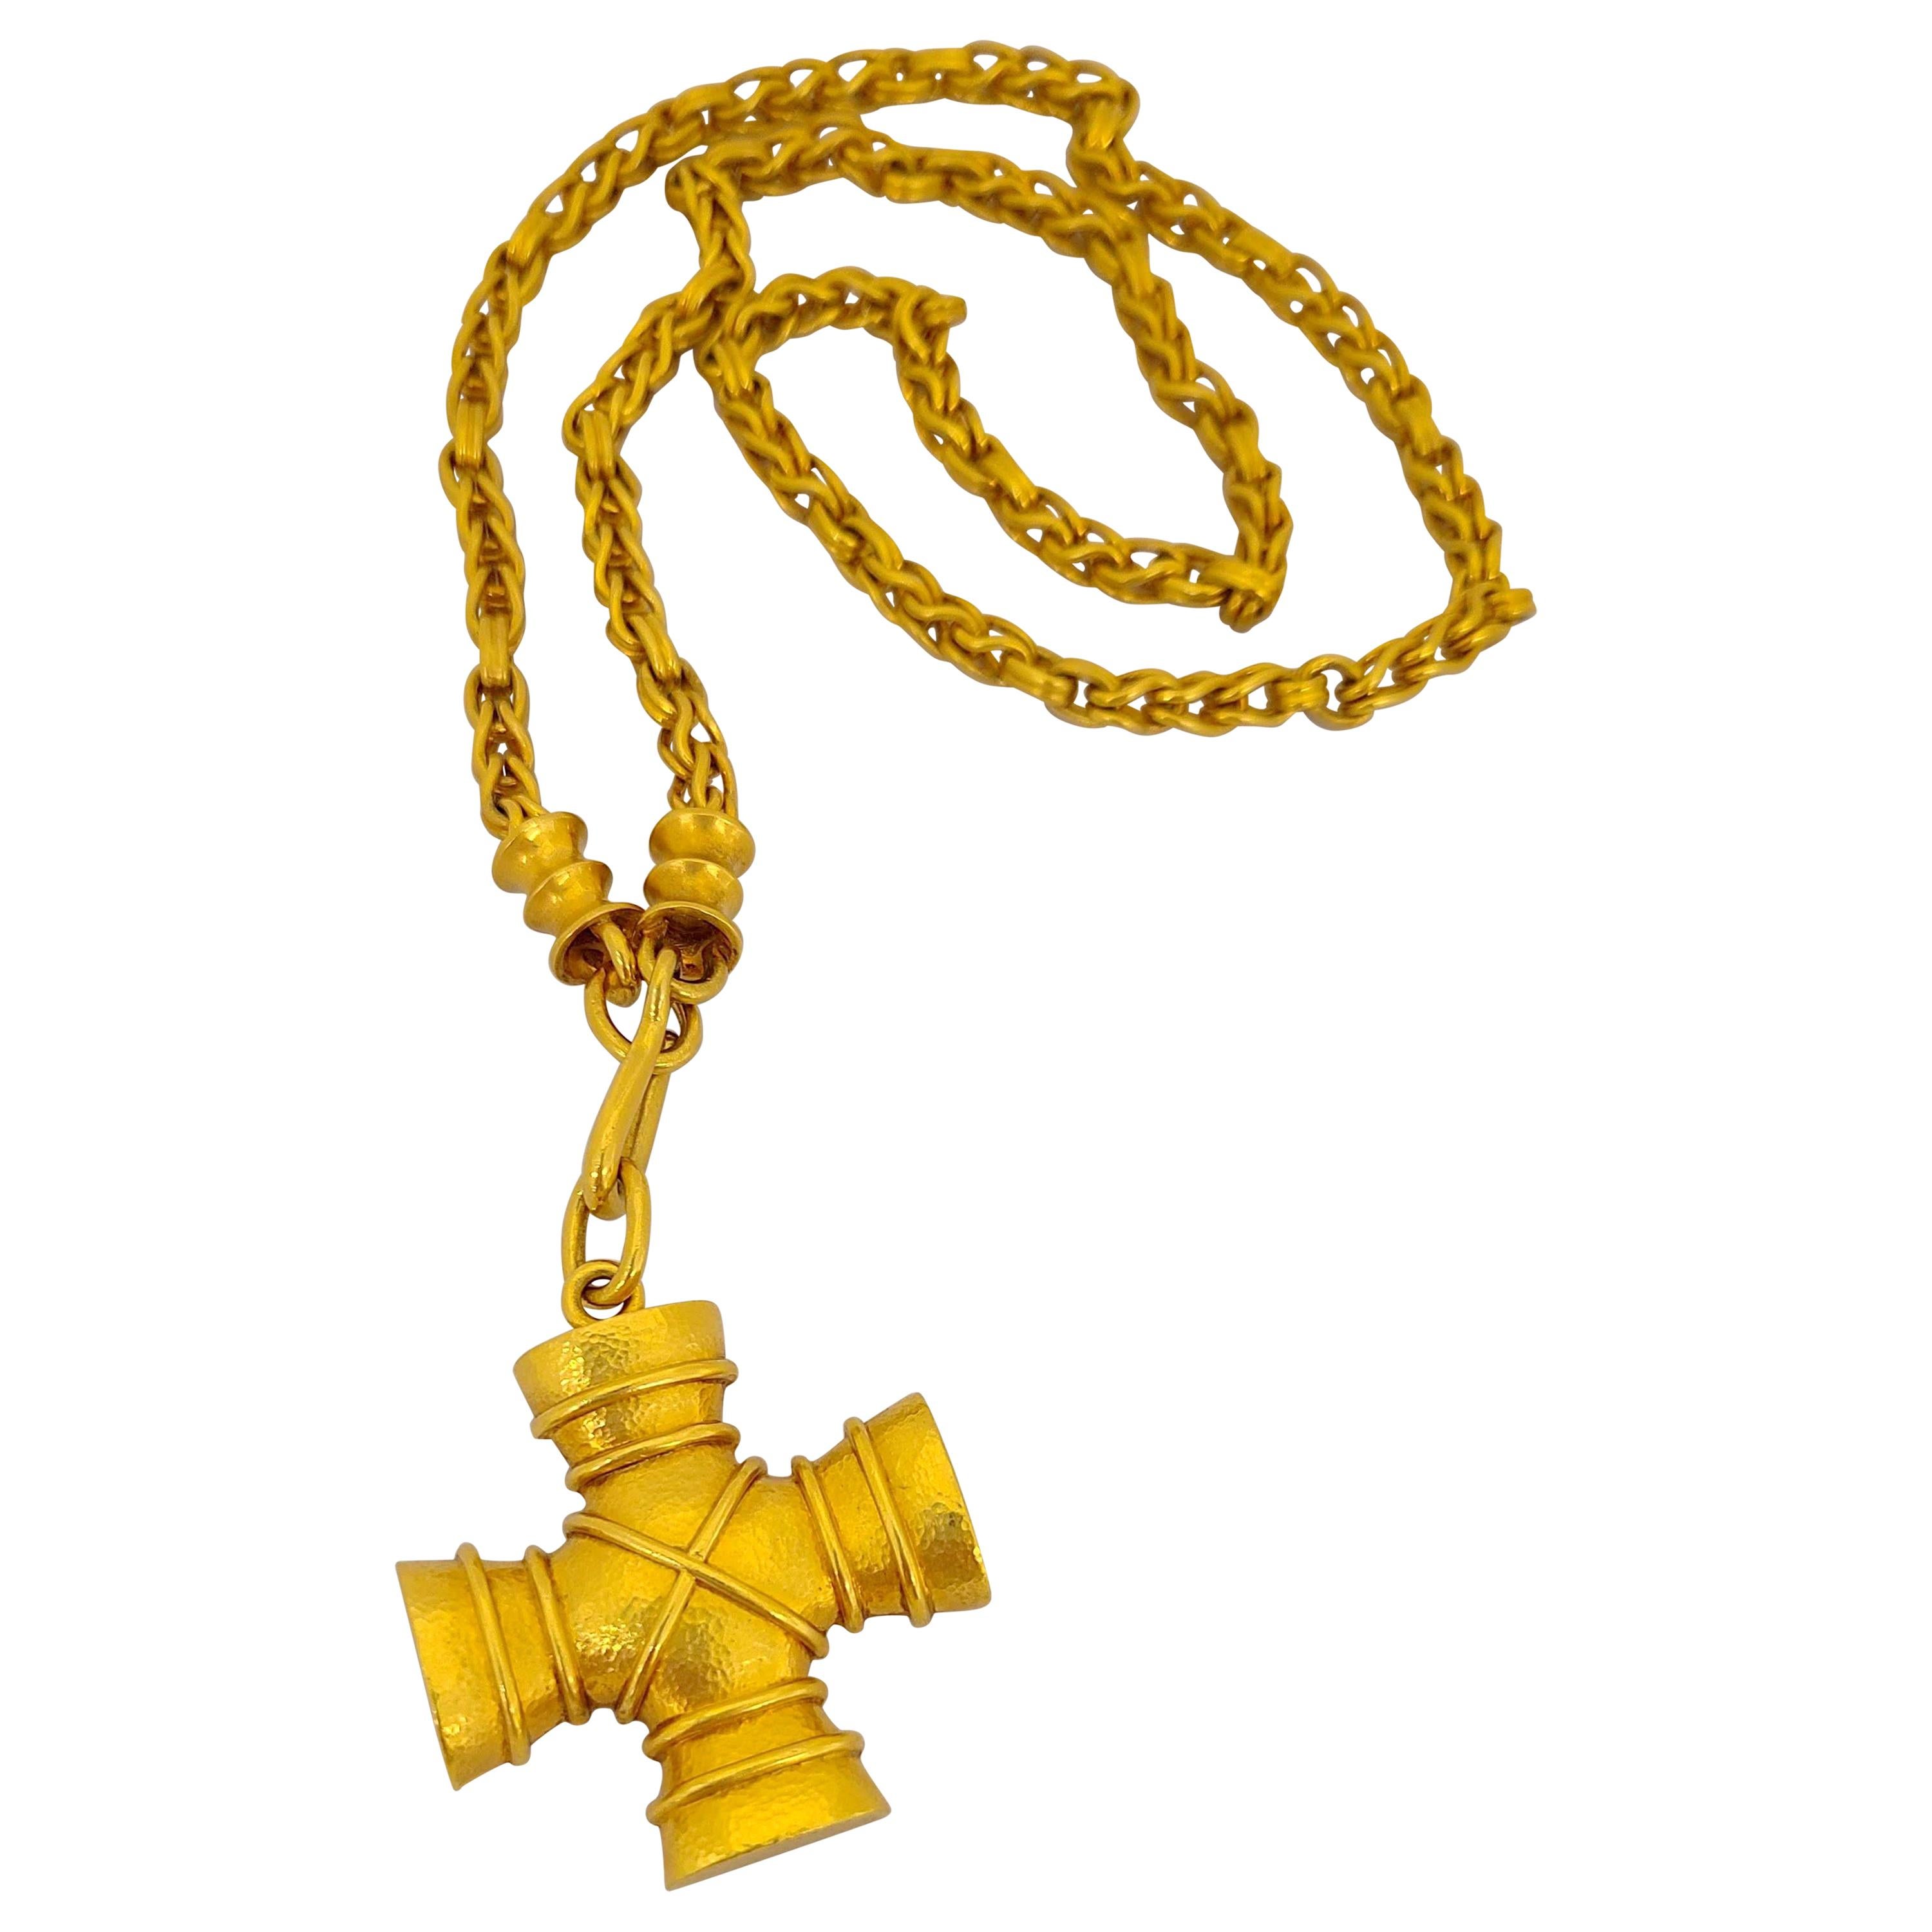 Zolotas 22 Karat und 18 Karat Gelbgold Griechisches Kreuz und Kette Anhänger Halskette